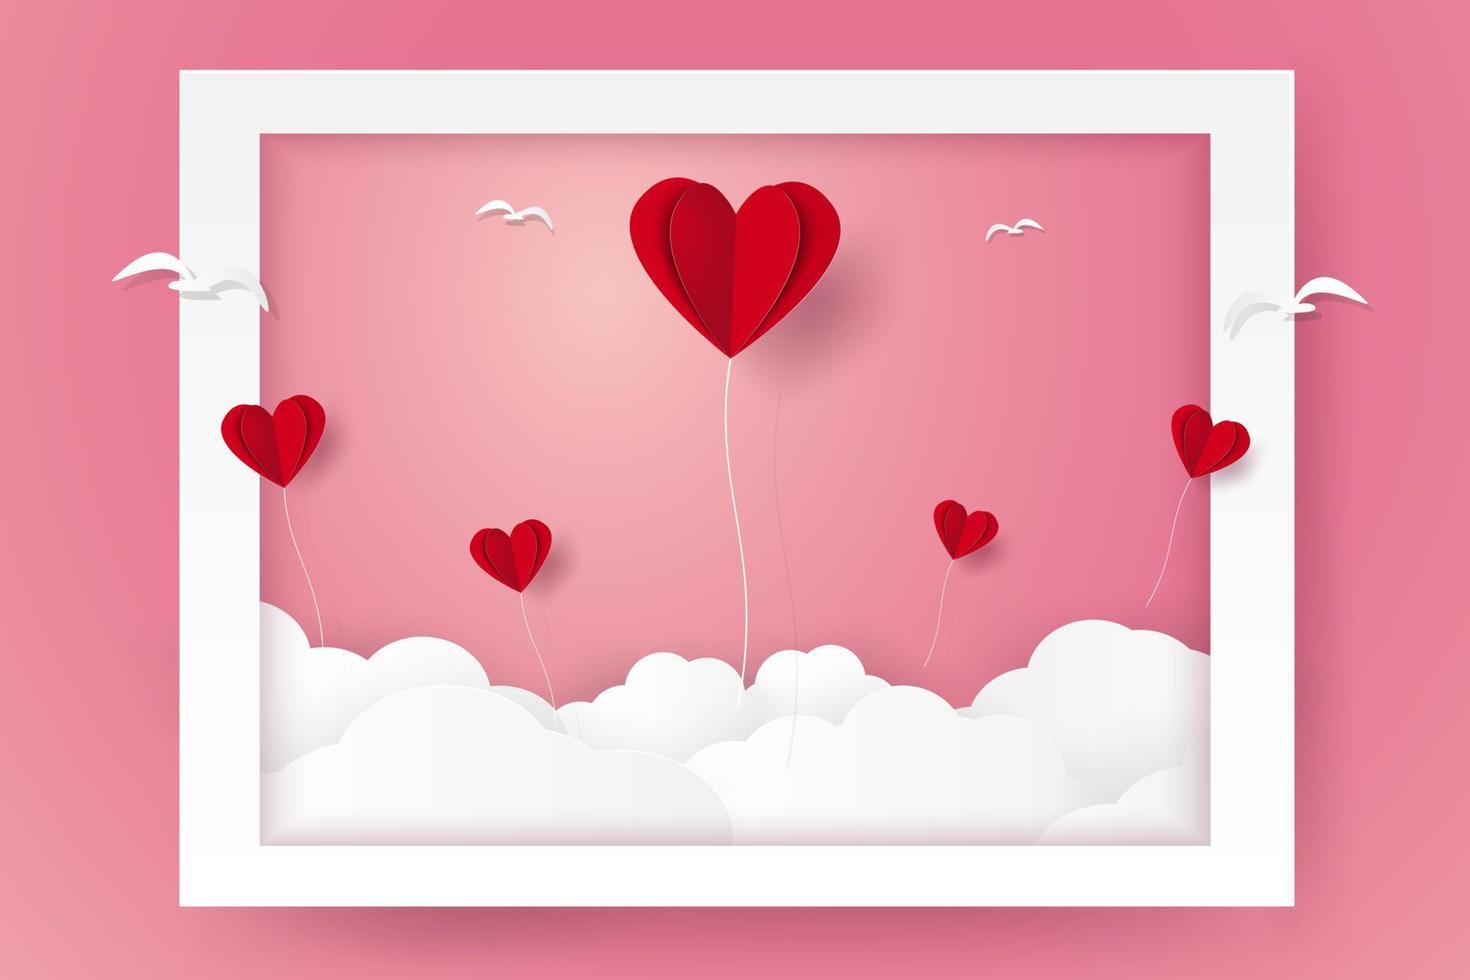 giorno di san valentino, illustrazione dell'amore, palloncini a cuore e uccelli che volano fuori dalla cornice, stile cartaceo vettore